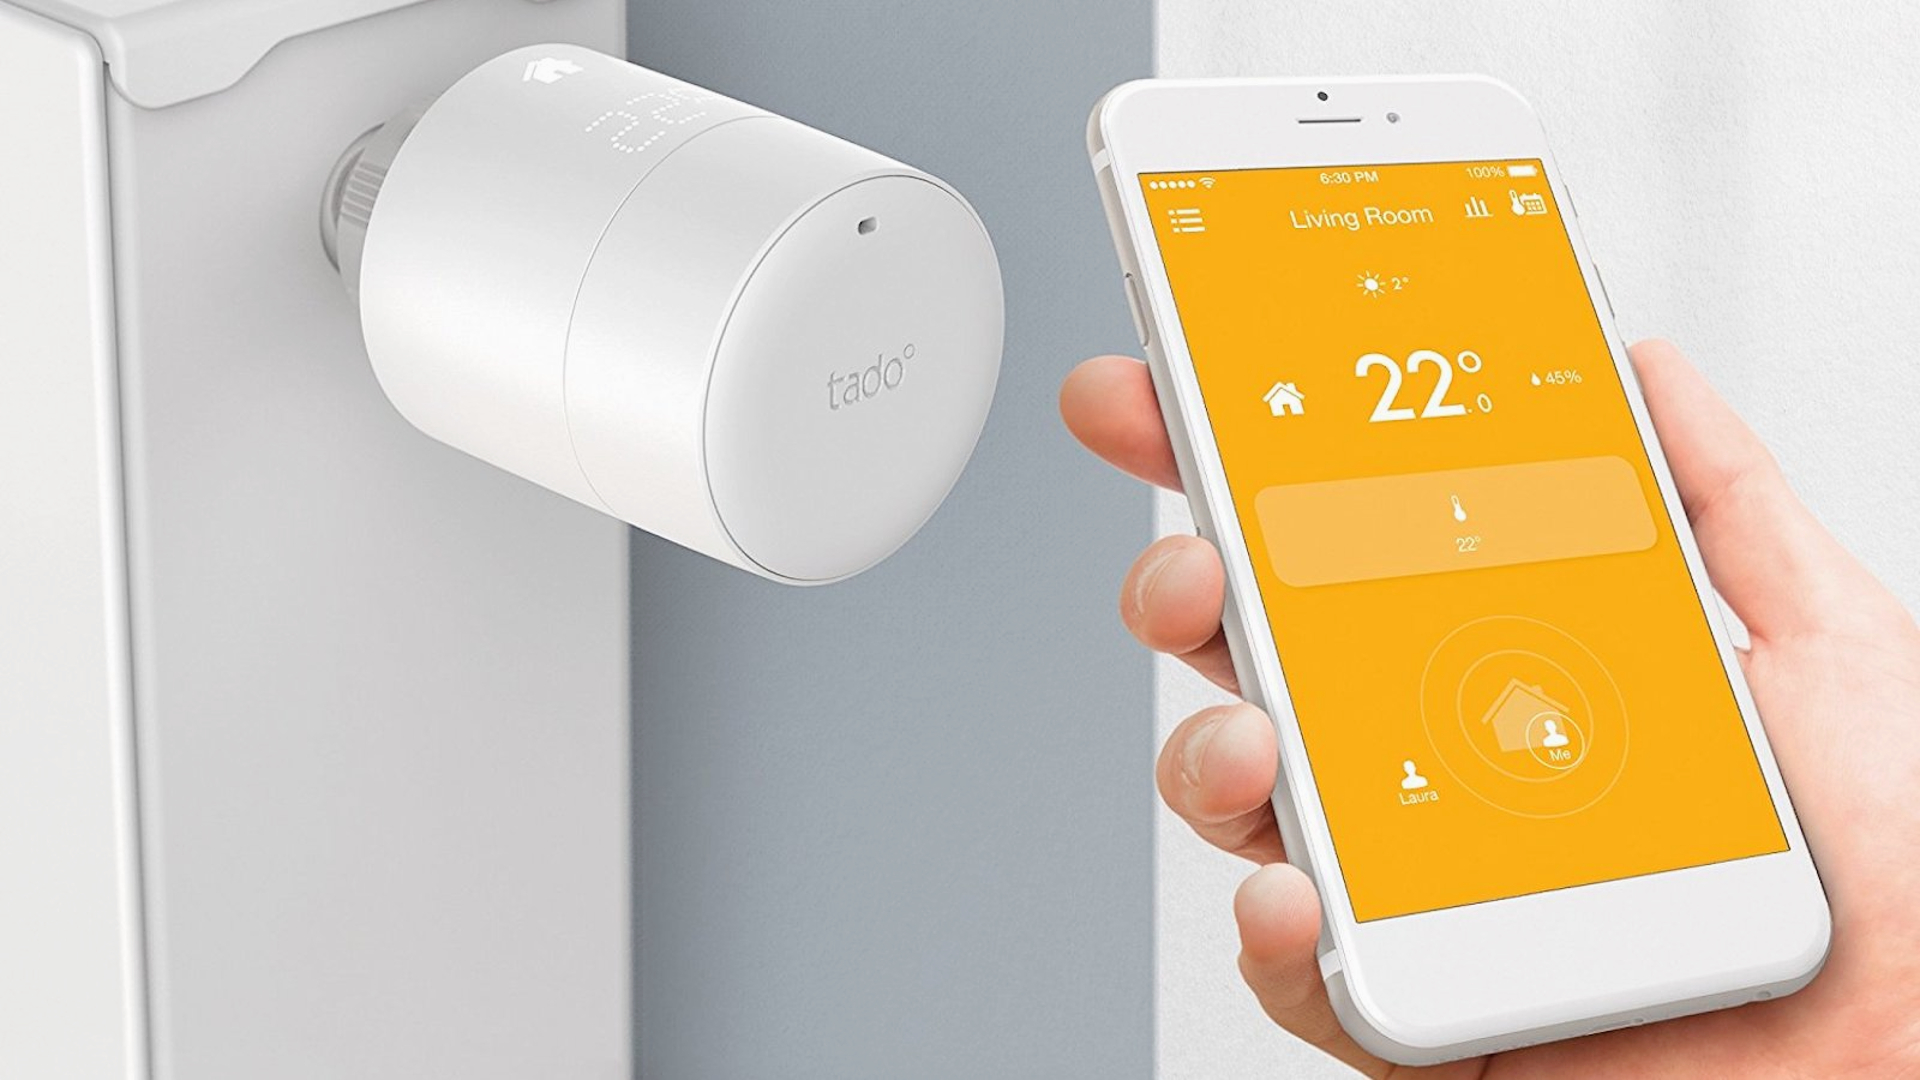 Utilgængelig Frastøde Foreman tado°'s Smart termostater sælger godt i Europa | TechRadar